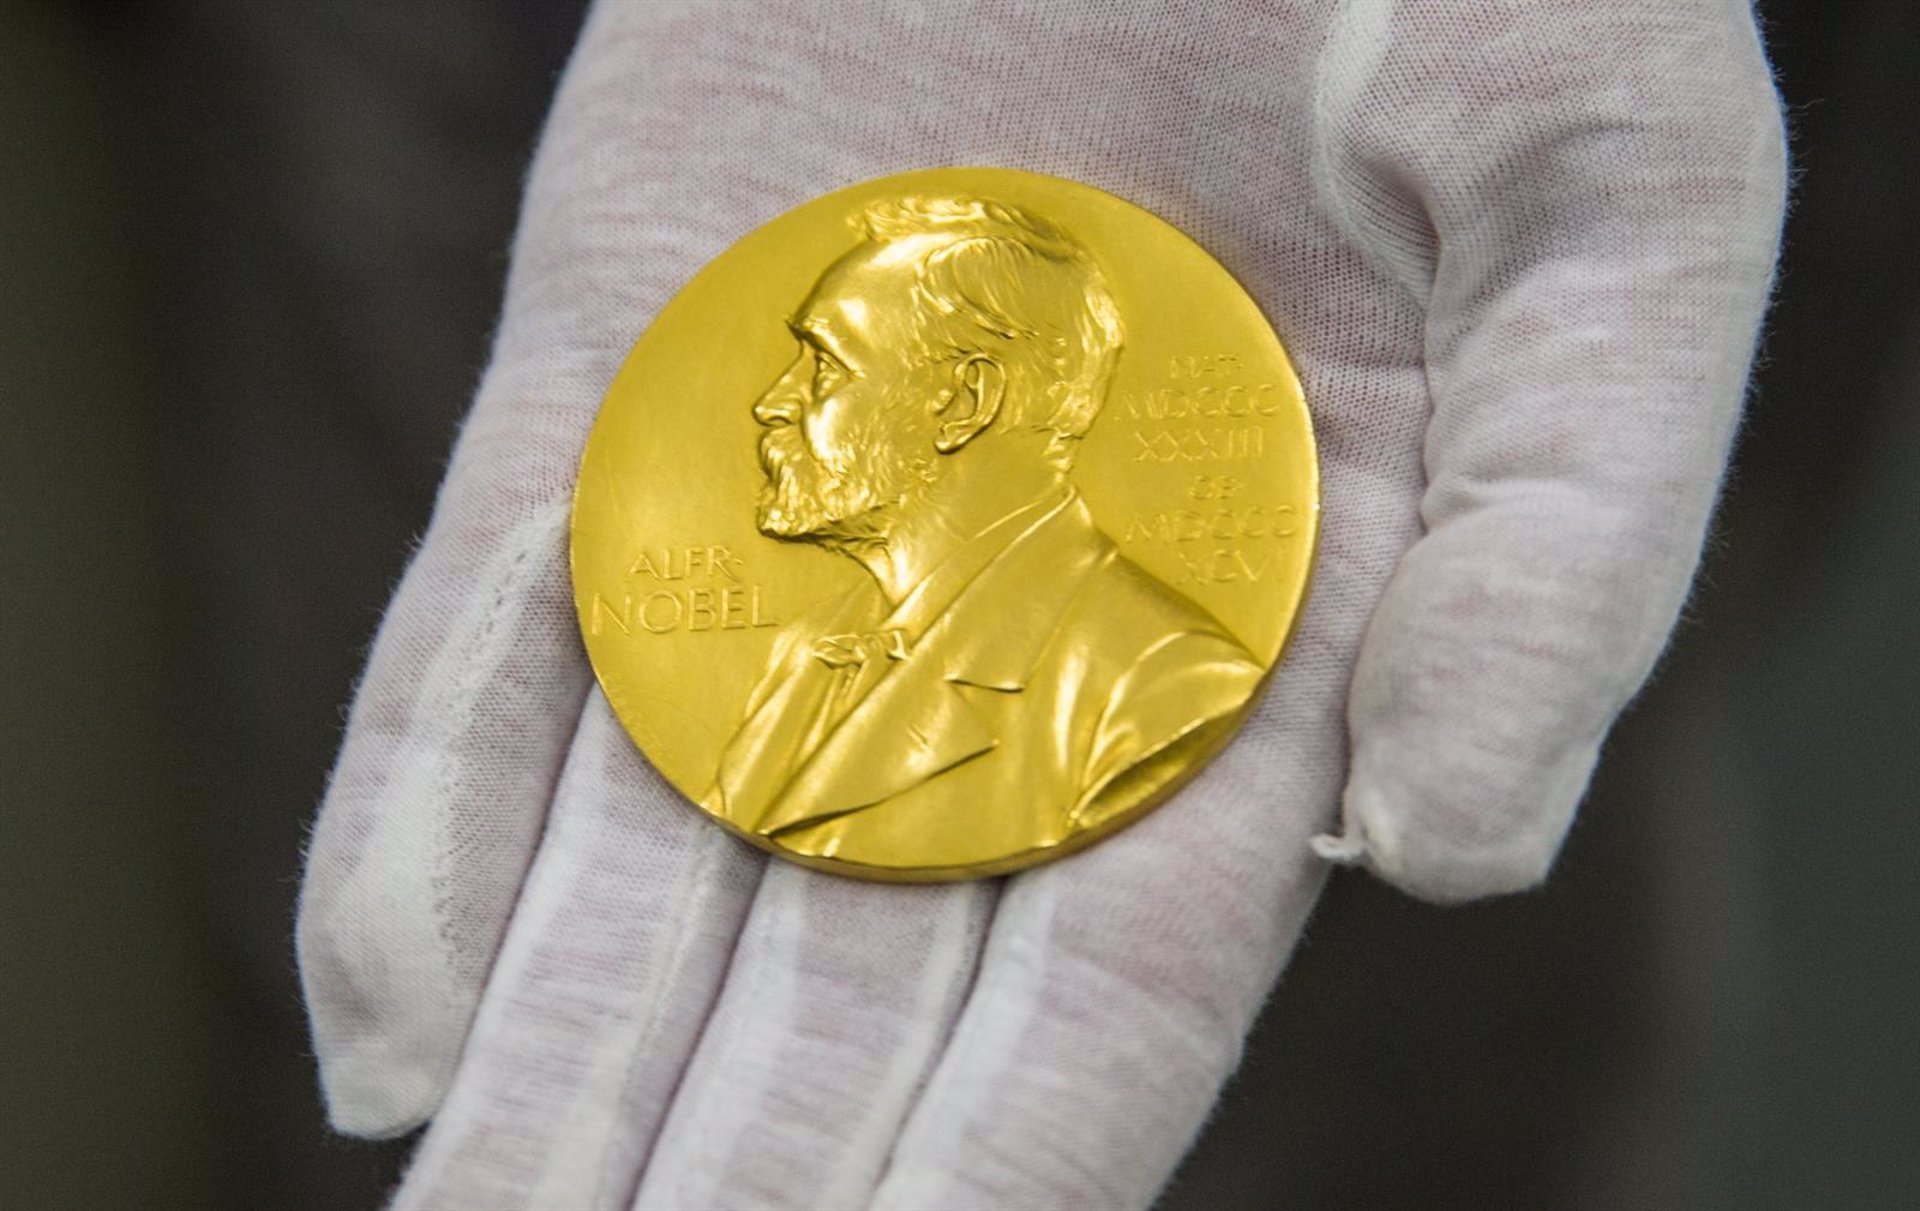 Bielorrusia, Irán Y Rusia han sido excluidos de la ceremonia de premiación de los Nobel